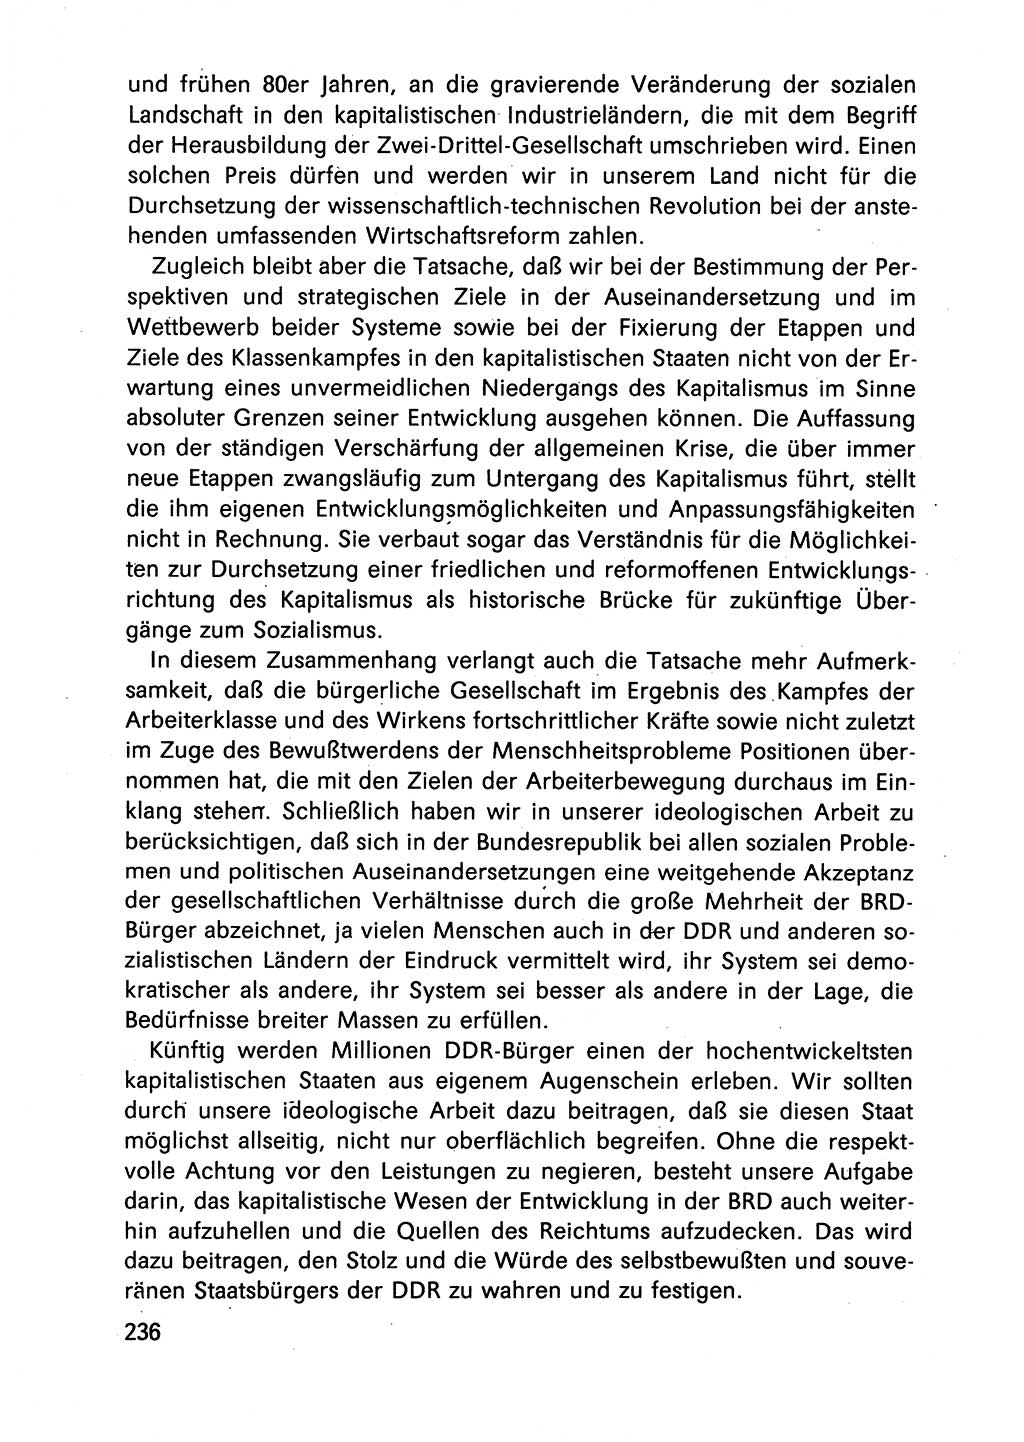 Diskussionsbeiträge, 10. Tagung des ZK (Zentralkomitee) der SED (Sozialistische Einheitspartei Deutschlands) [Deutsche Demokratische Republik (DDR)] 1989, Seite 236 (Disk.-Beitr. 10. Tg. ZK SED DDR 1989, S. 236)